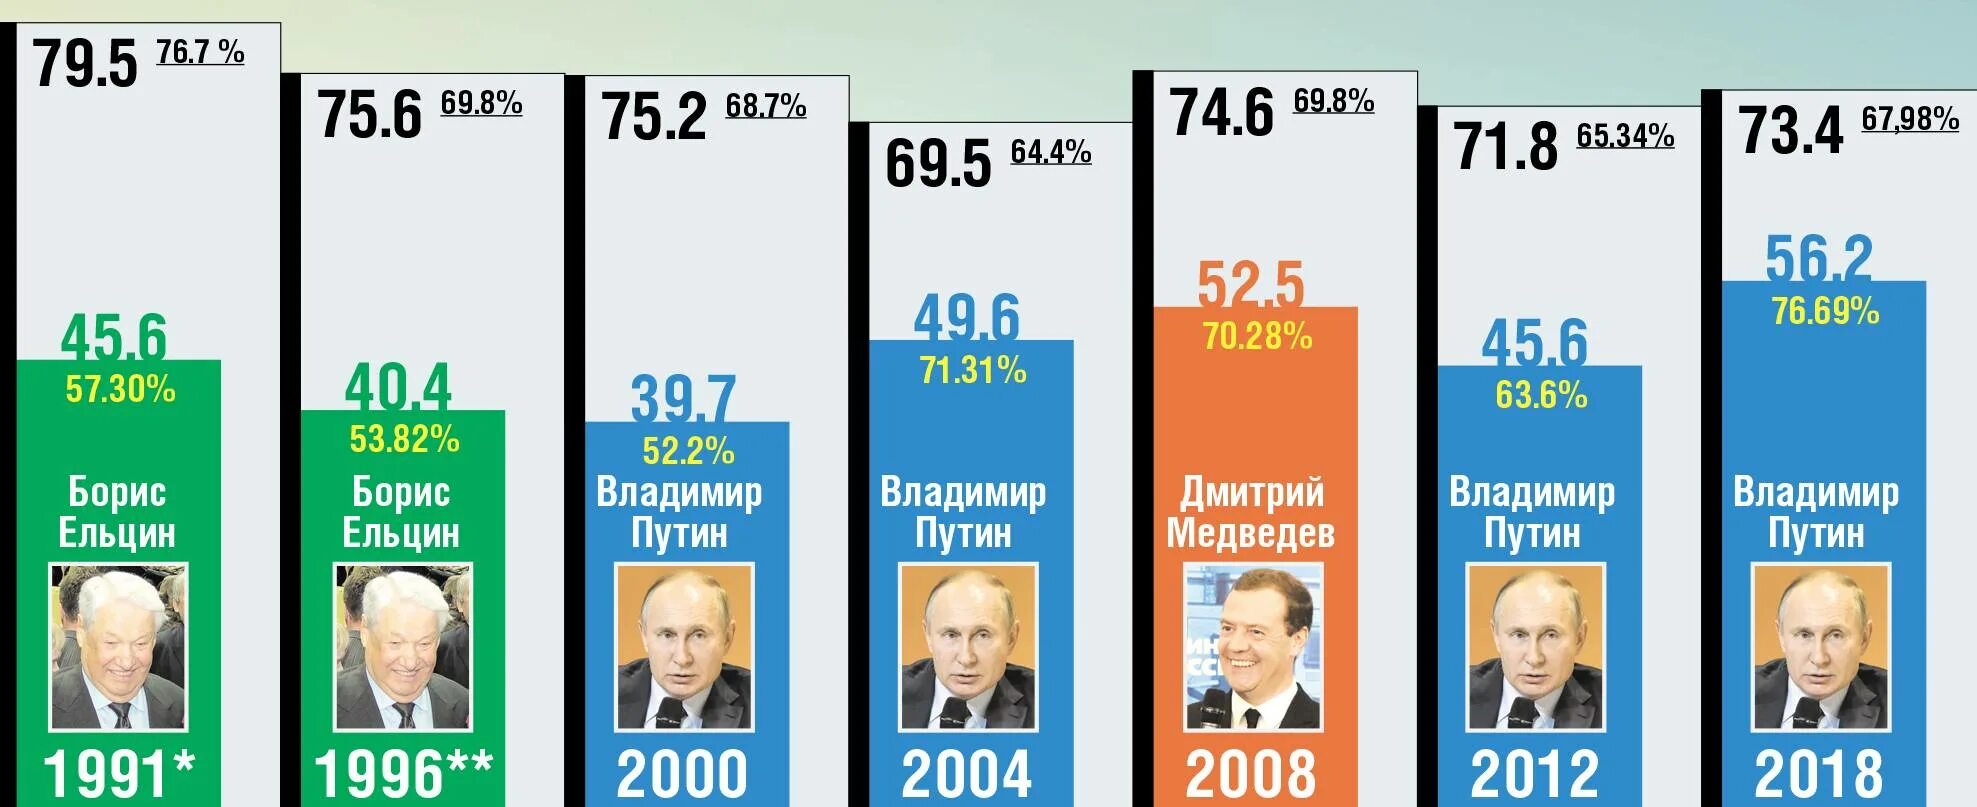 Итоги голосования президента России 2004. Итоги выборов Путина 2004 года. Выборы 2018 года в России. Выборы 2018 года в России президента.